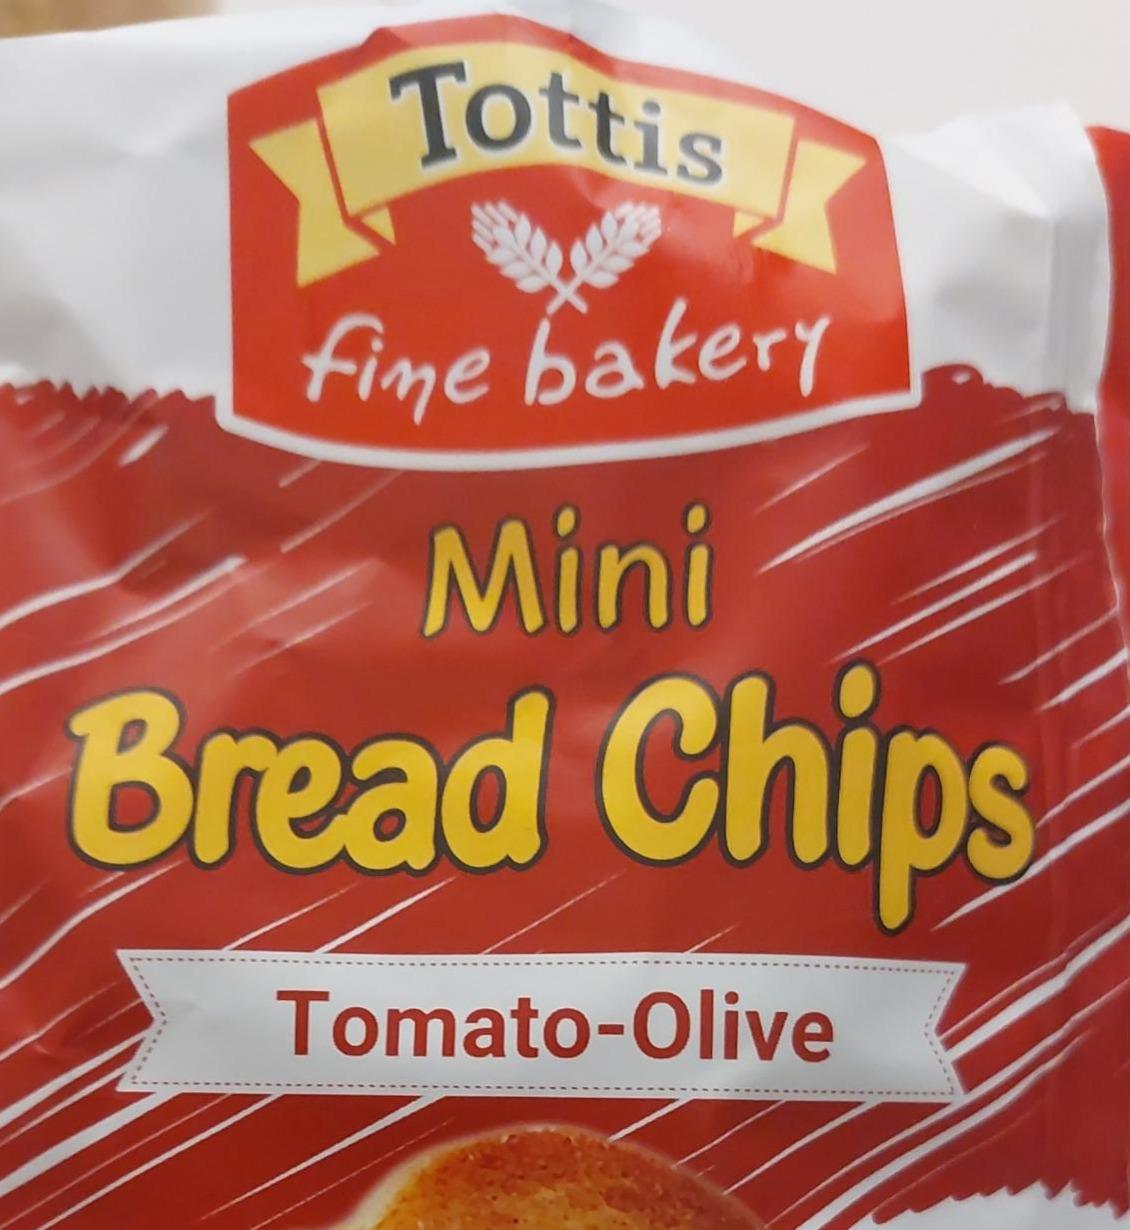 Fotografie - Mini Bread Chips Tomato-Olive Tottis